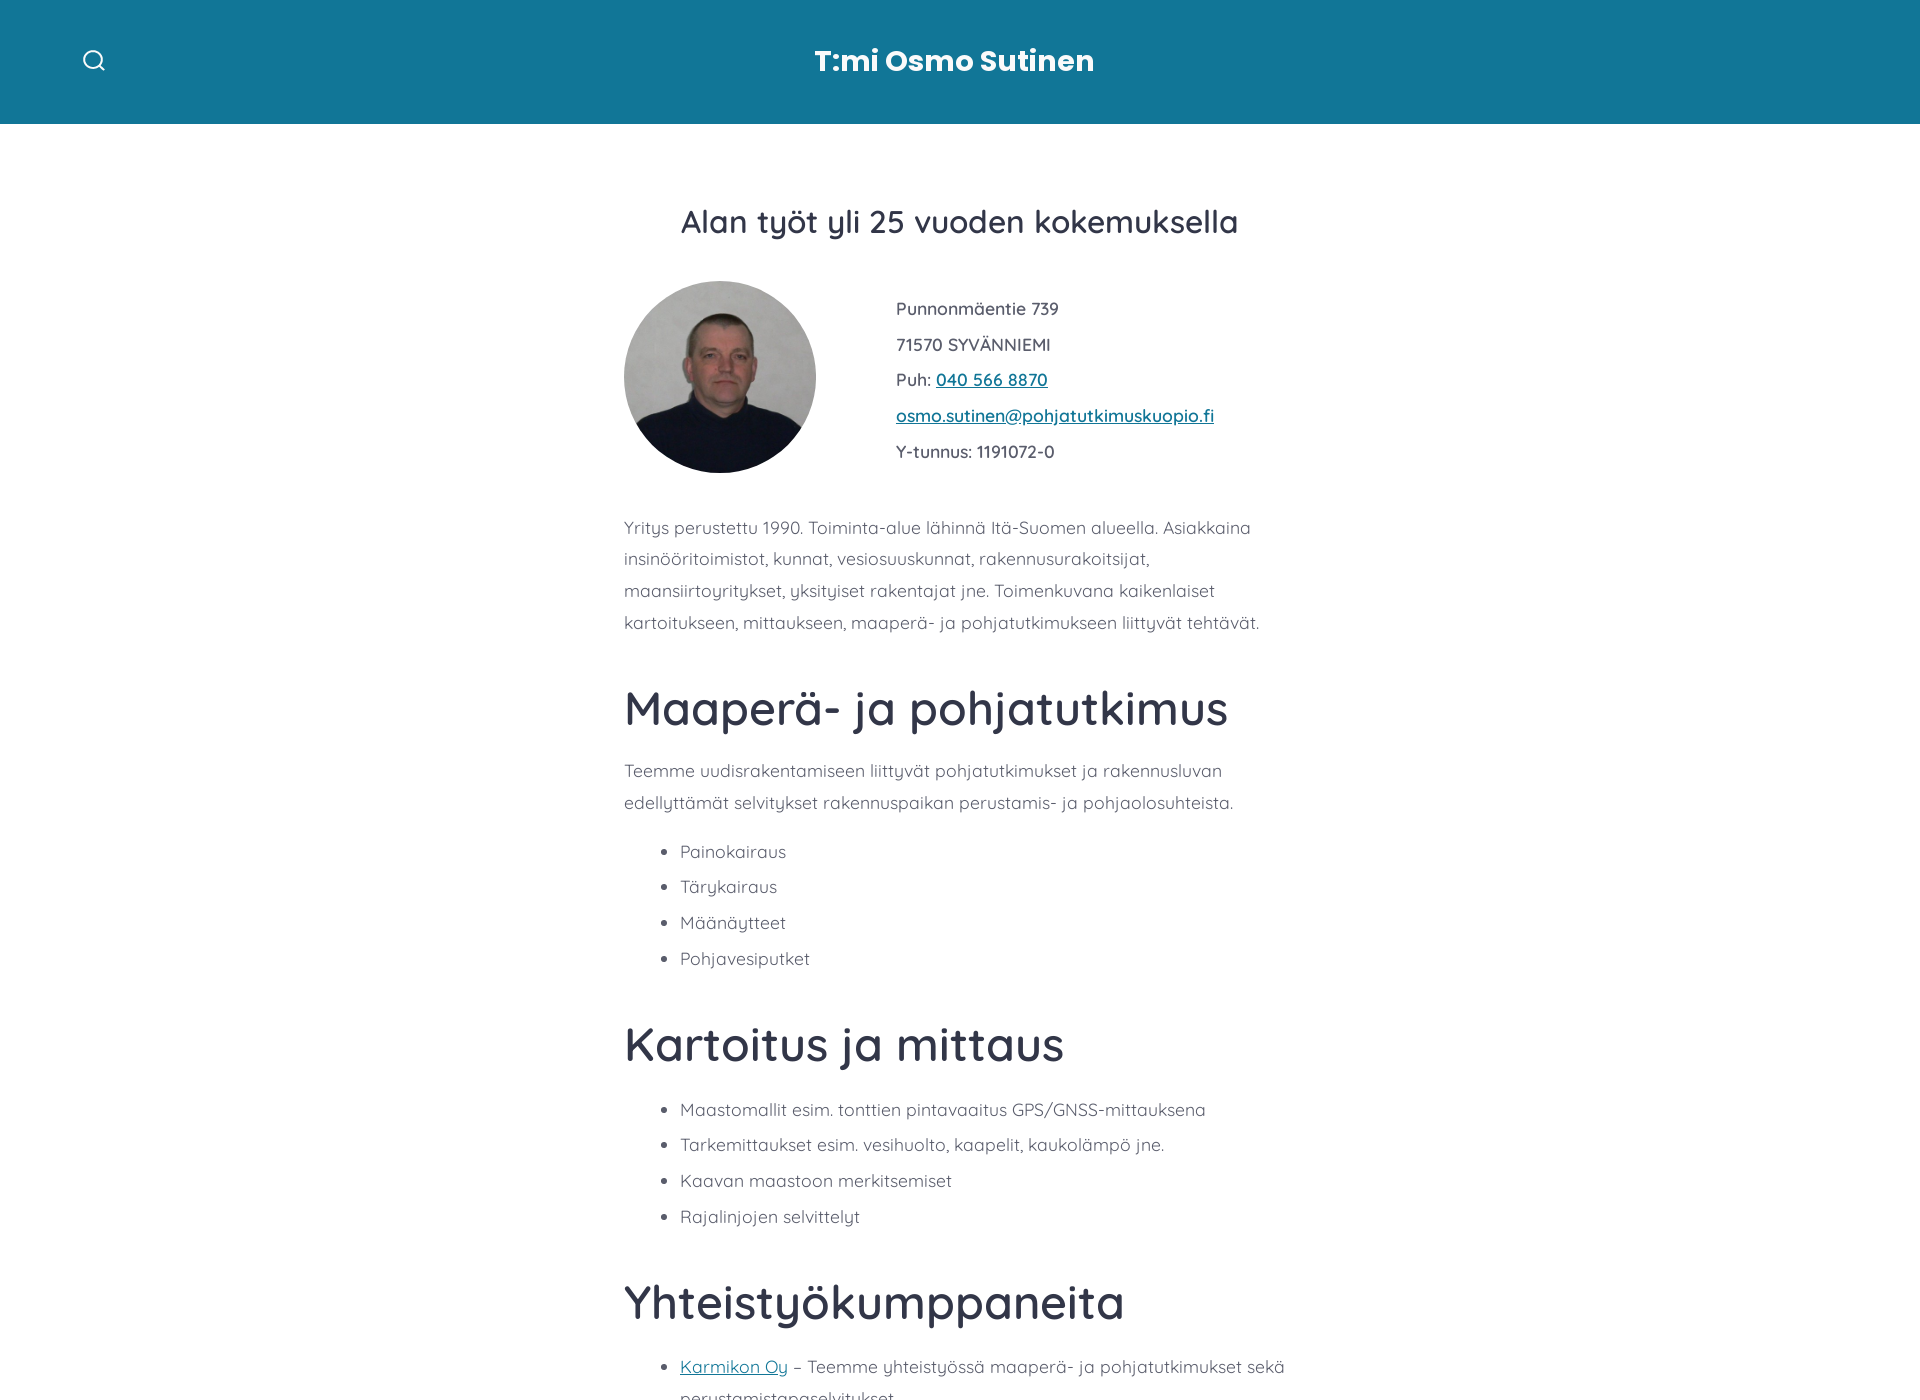 Skärmdump för pohjatutkimuskuopio.fi